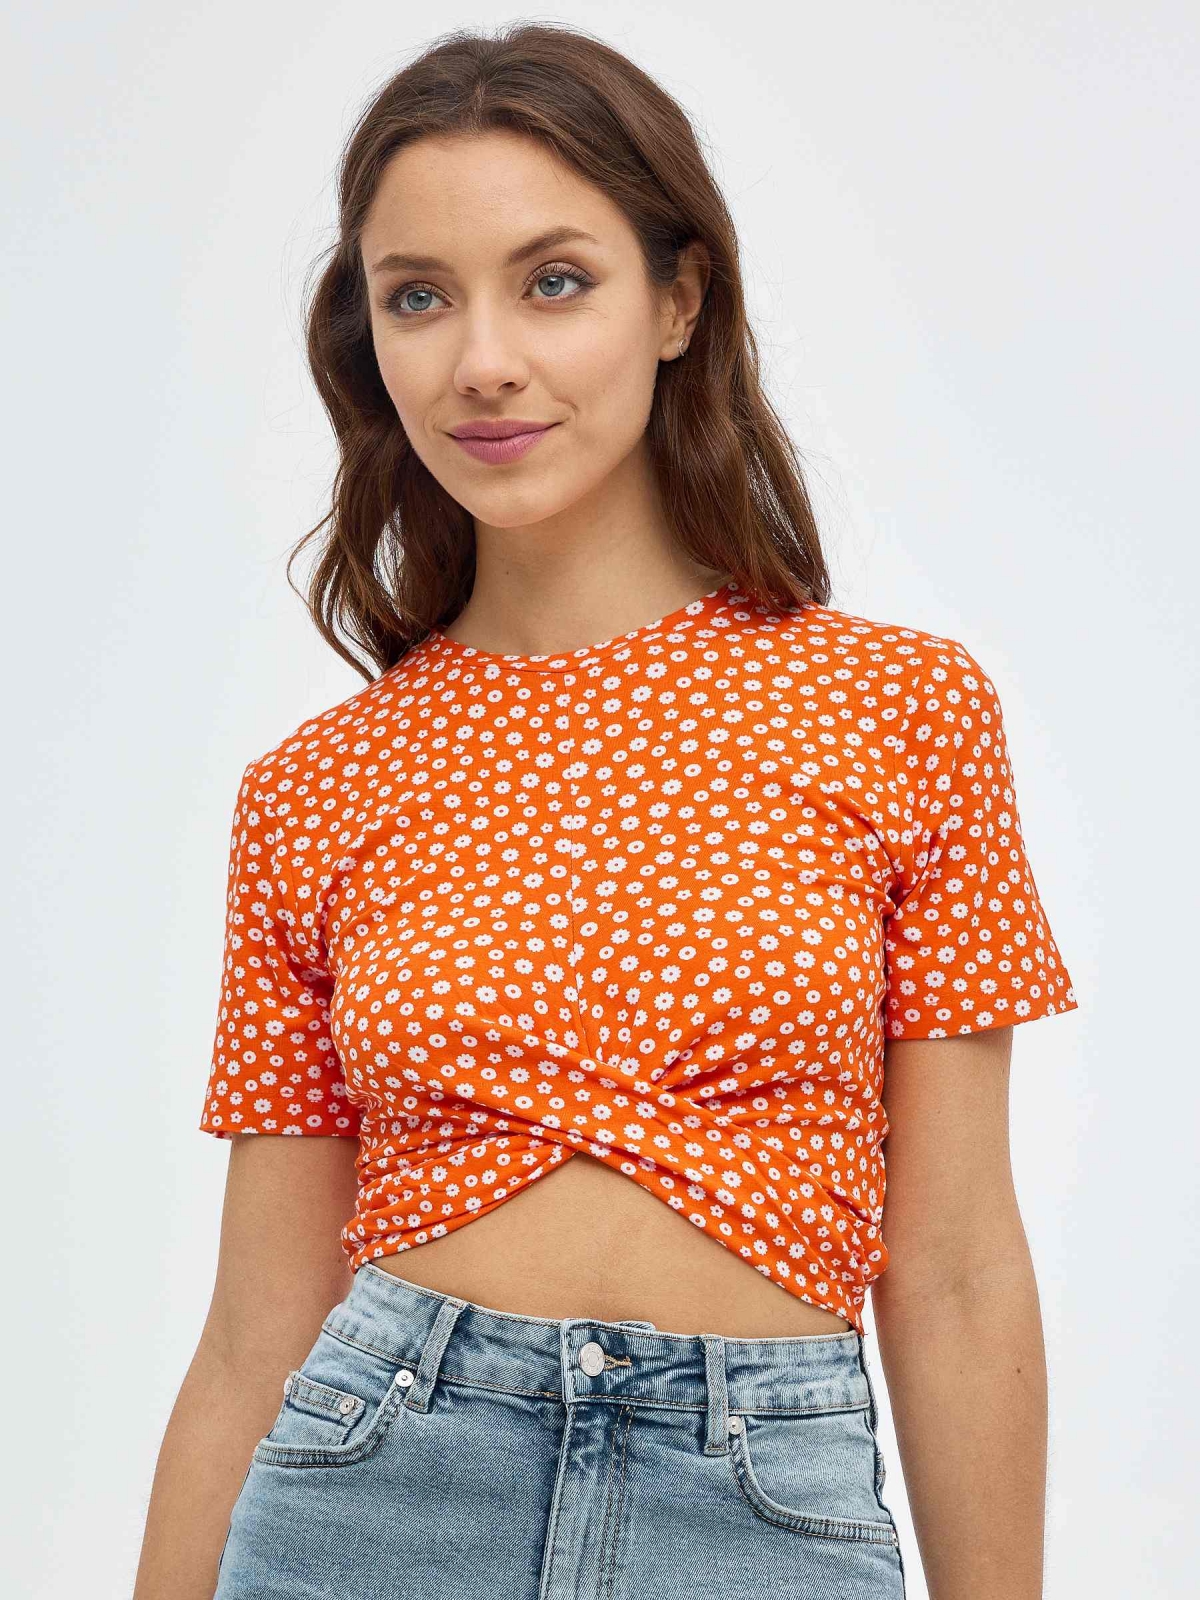 Camiseta de lunares con nudo naranja vista media frontal